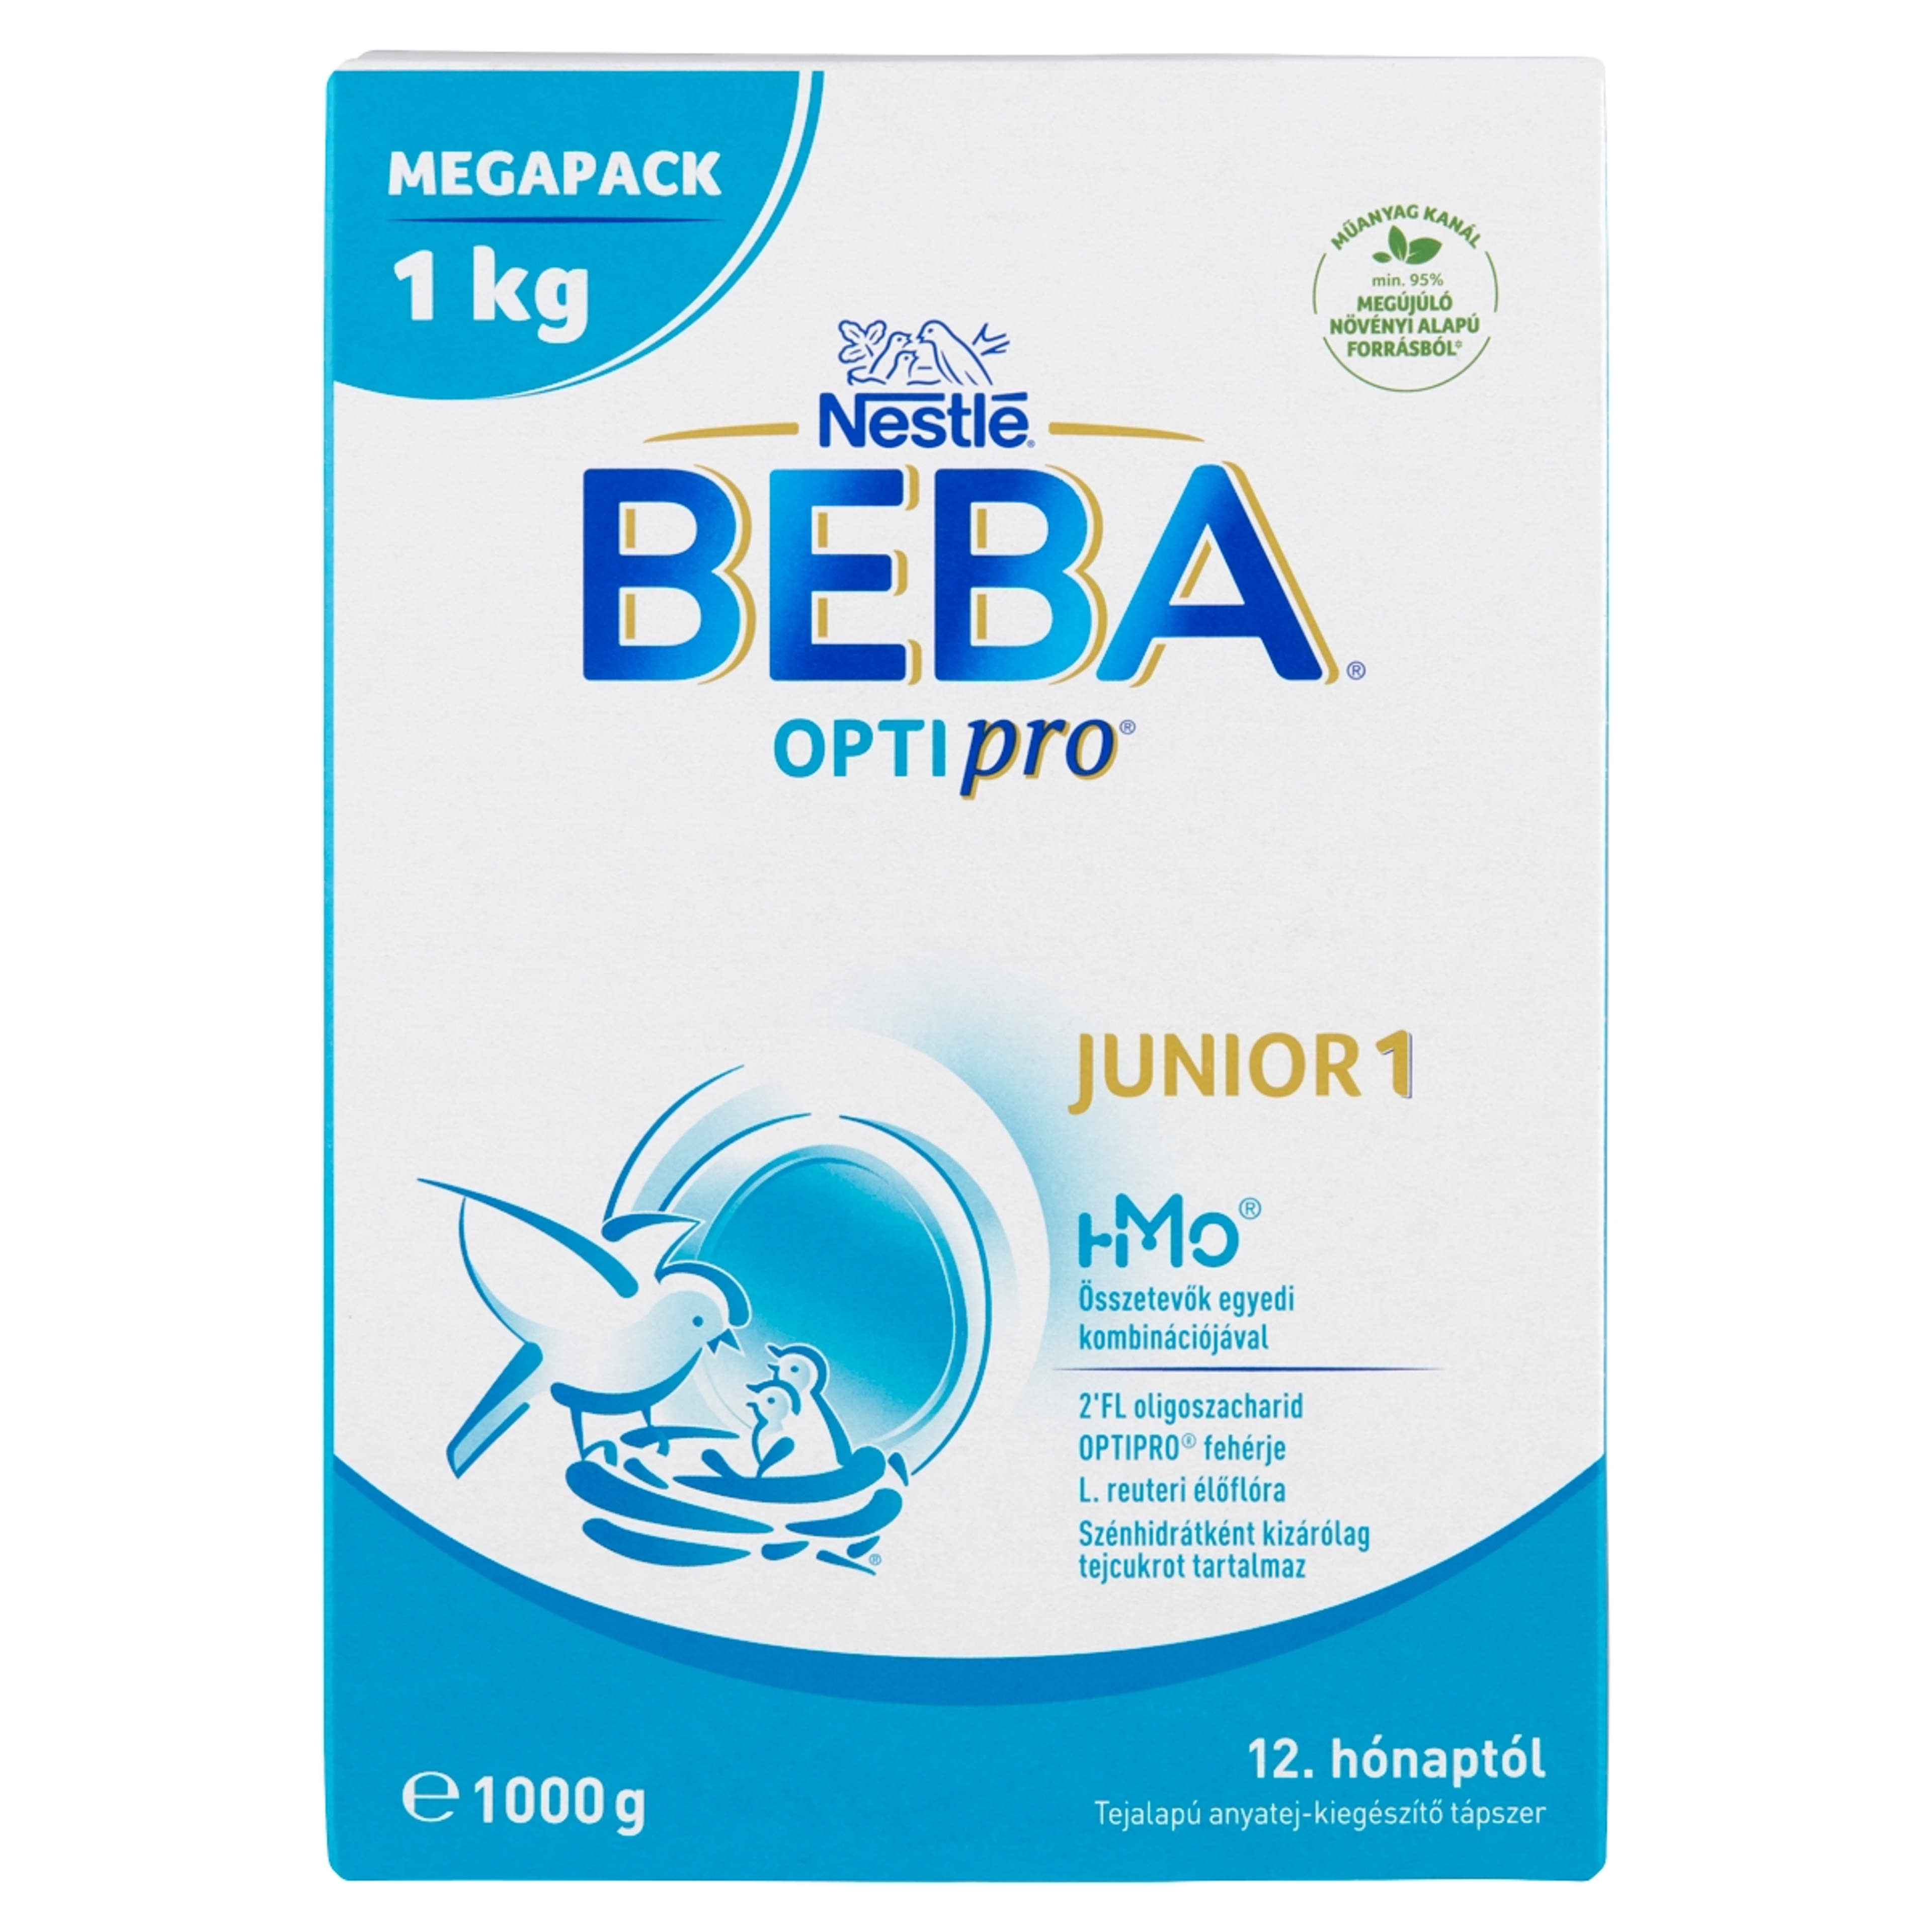 Beba Optipro 3 Junior tejalapú anyatej-kiegészítő tápszer 12. hónapos kortól - 1000 g